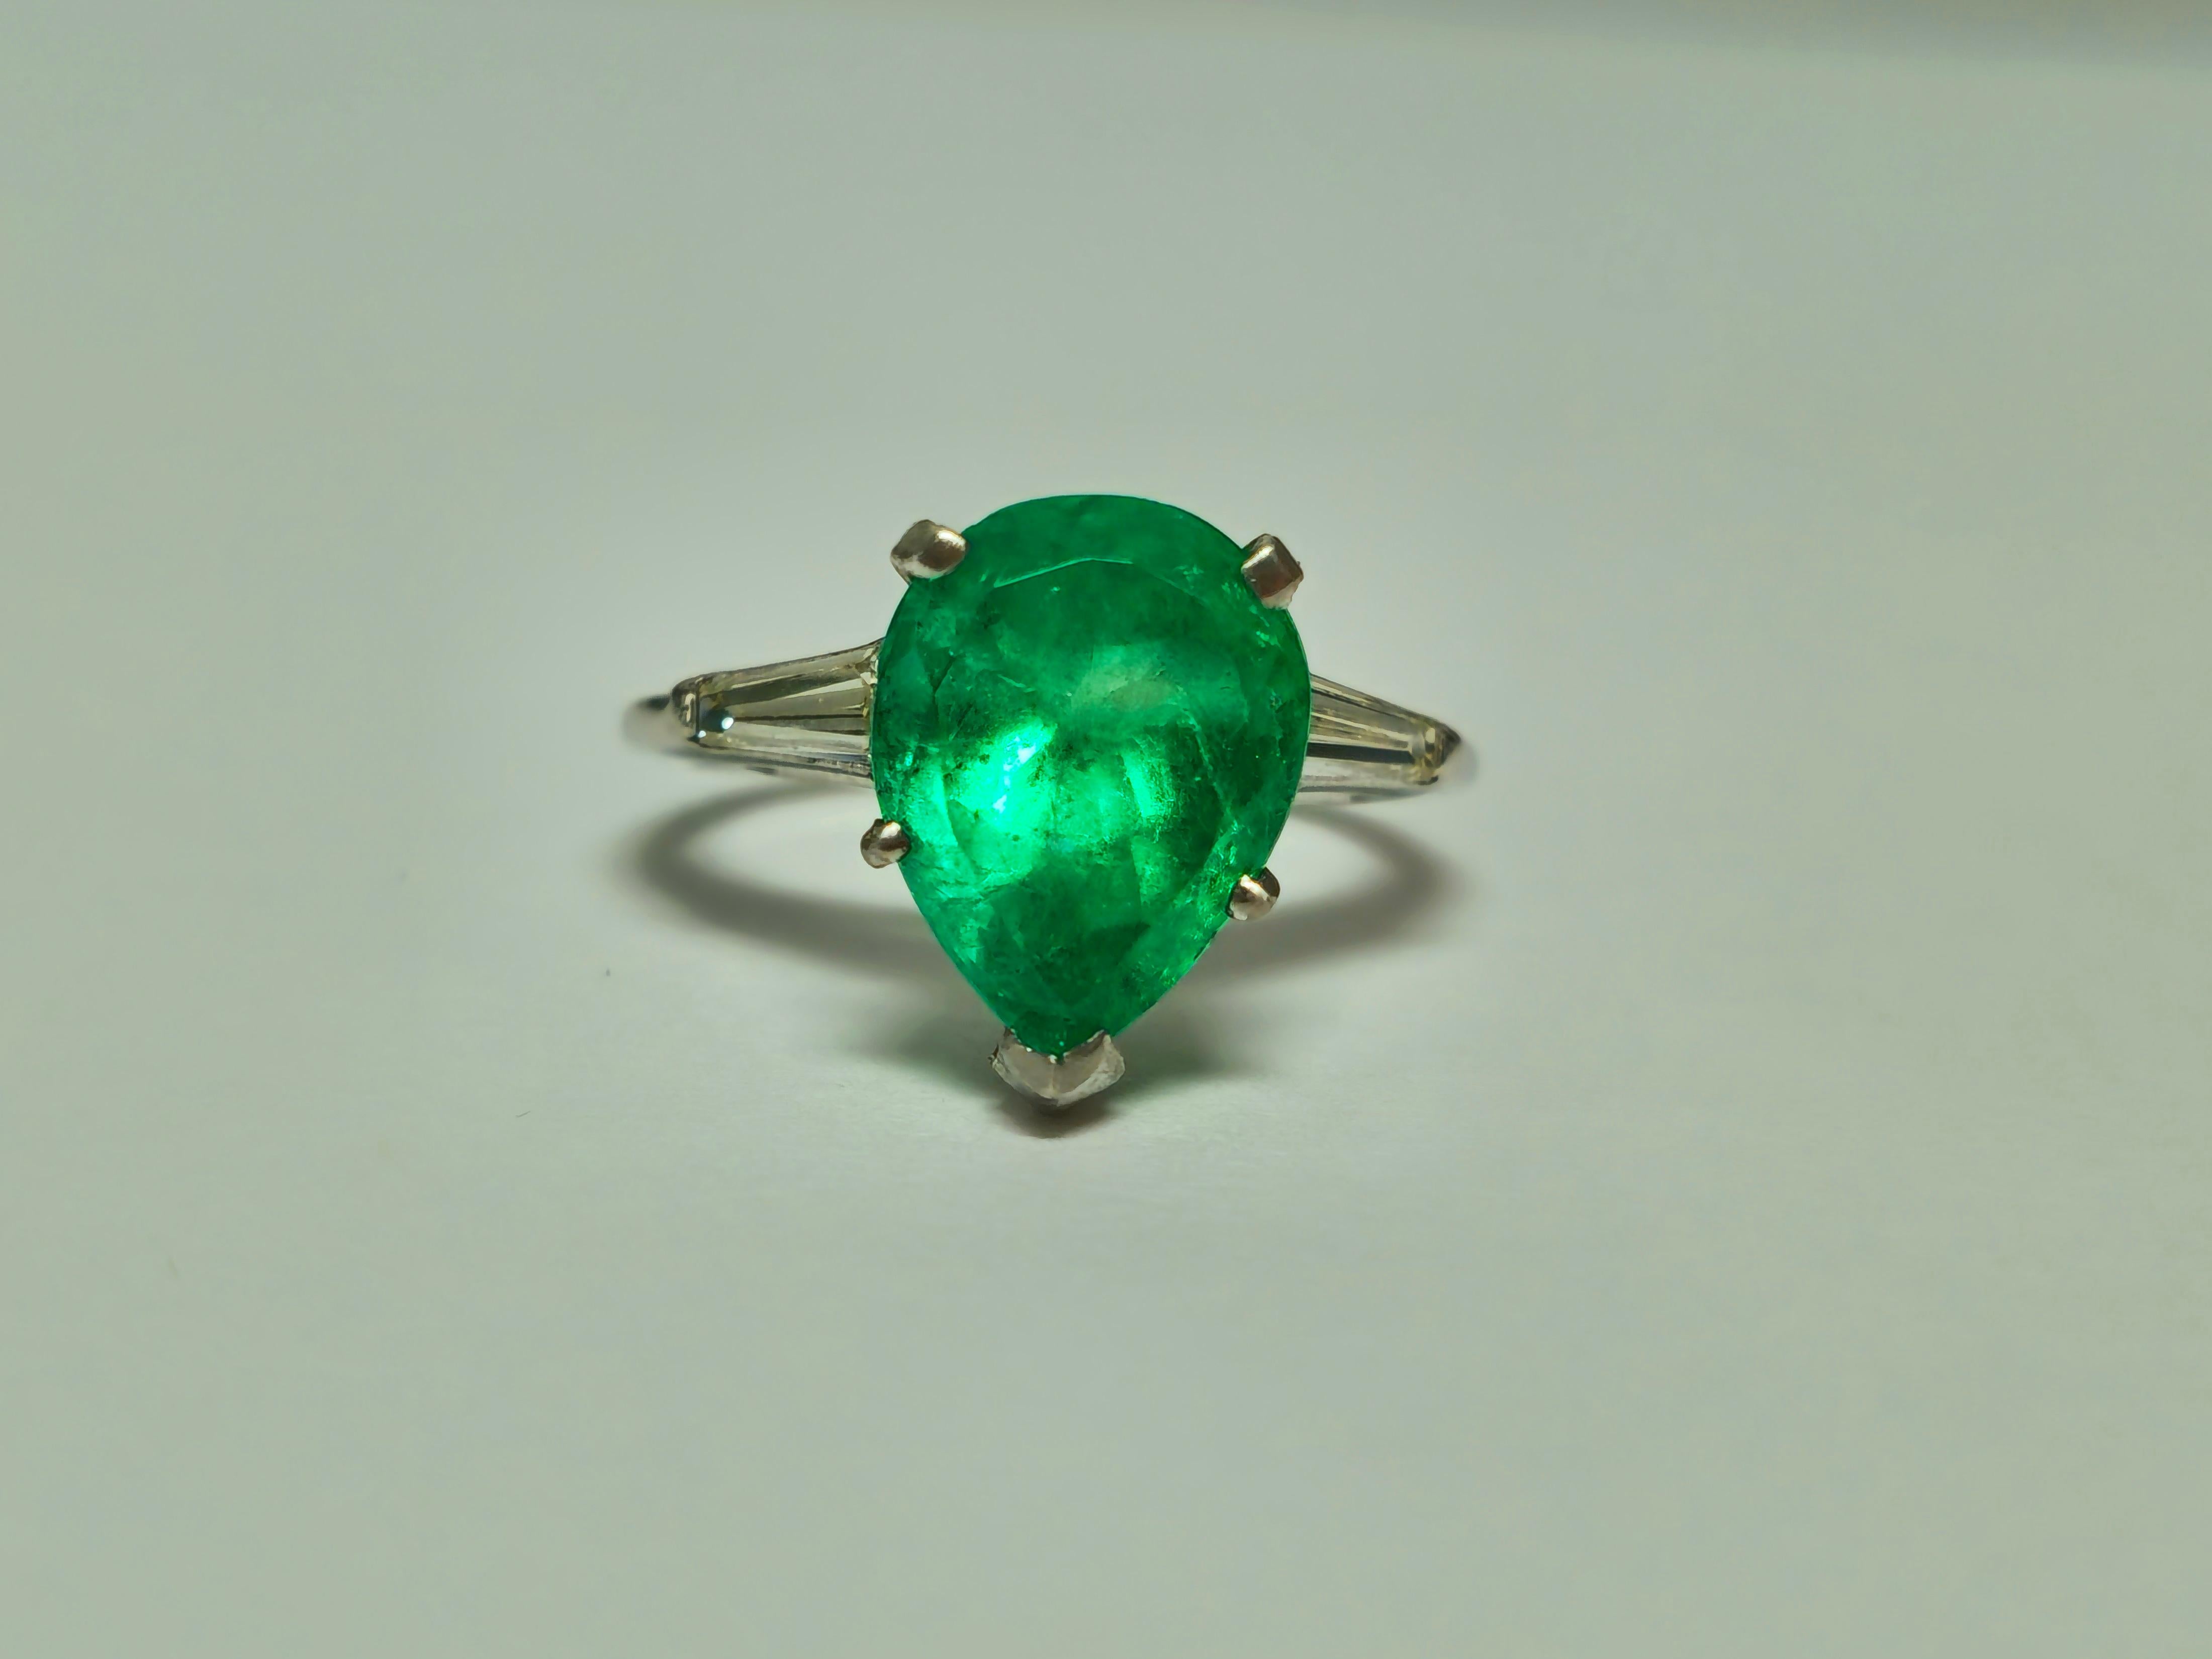 Tauchen Sie ein in zeitlosen Luxus mit unserem exquisiten Unisex-Ring aus Diamant, Smaragd und Platin. Dieses einzigartige Vintage-Schmuckstück ist aus massivem Platin gefertigt und zeigt einen atemberaubenden 4,50 Karat schweren, birnenförmigen